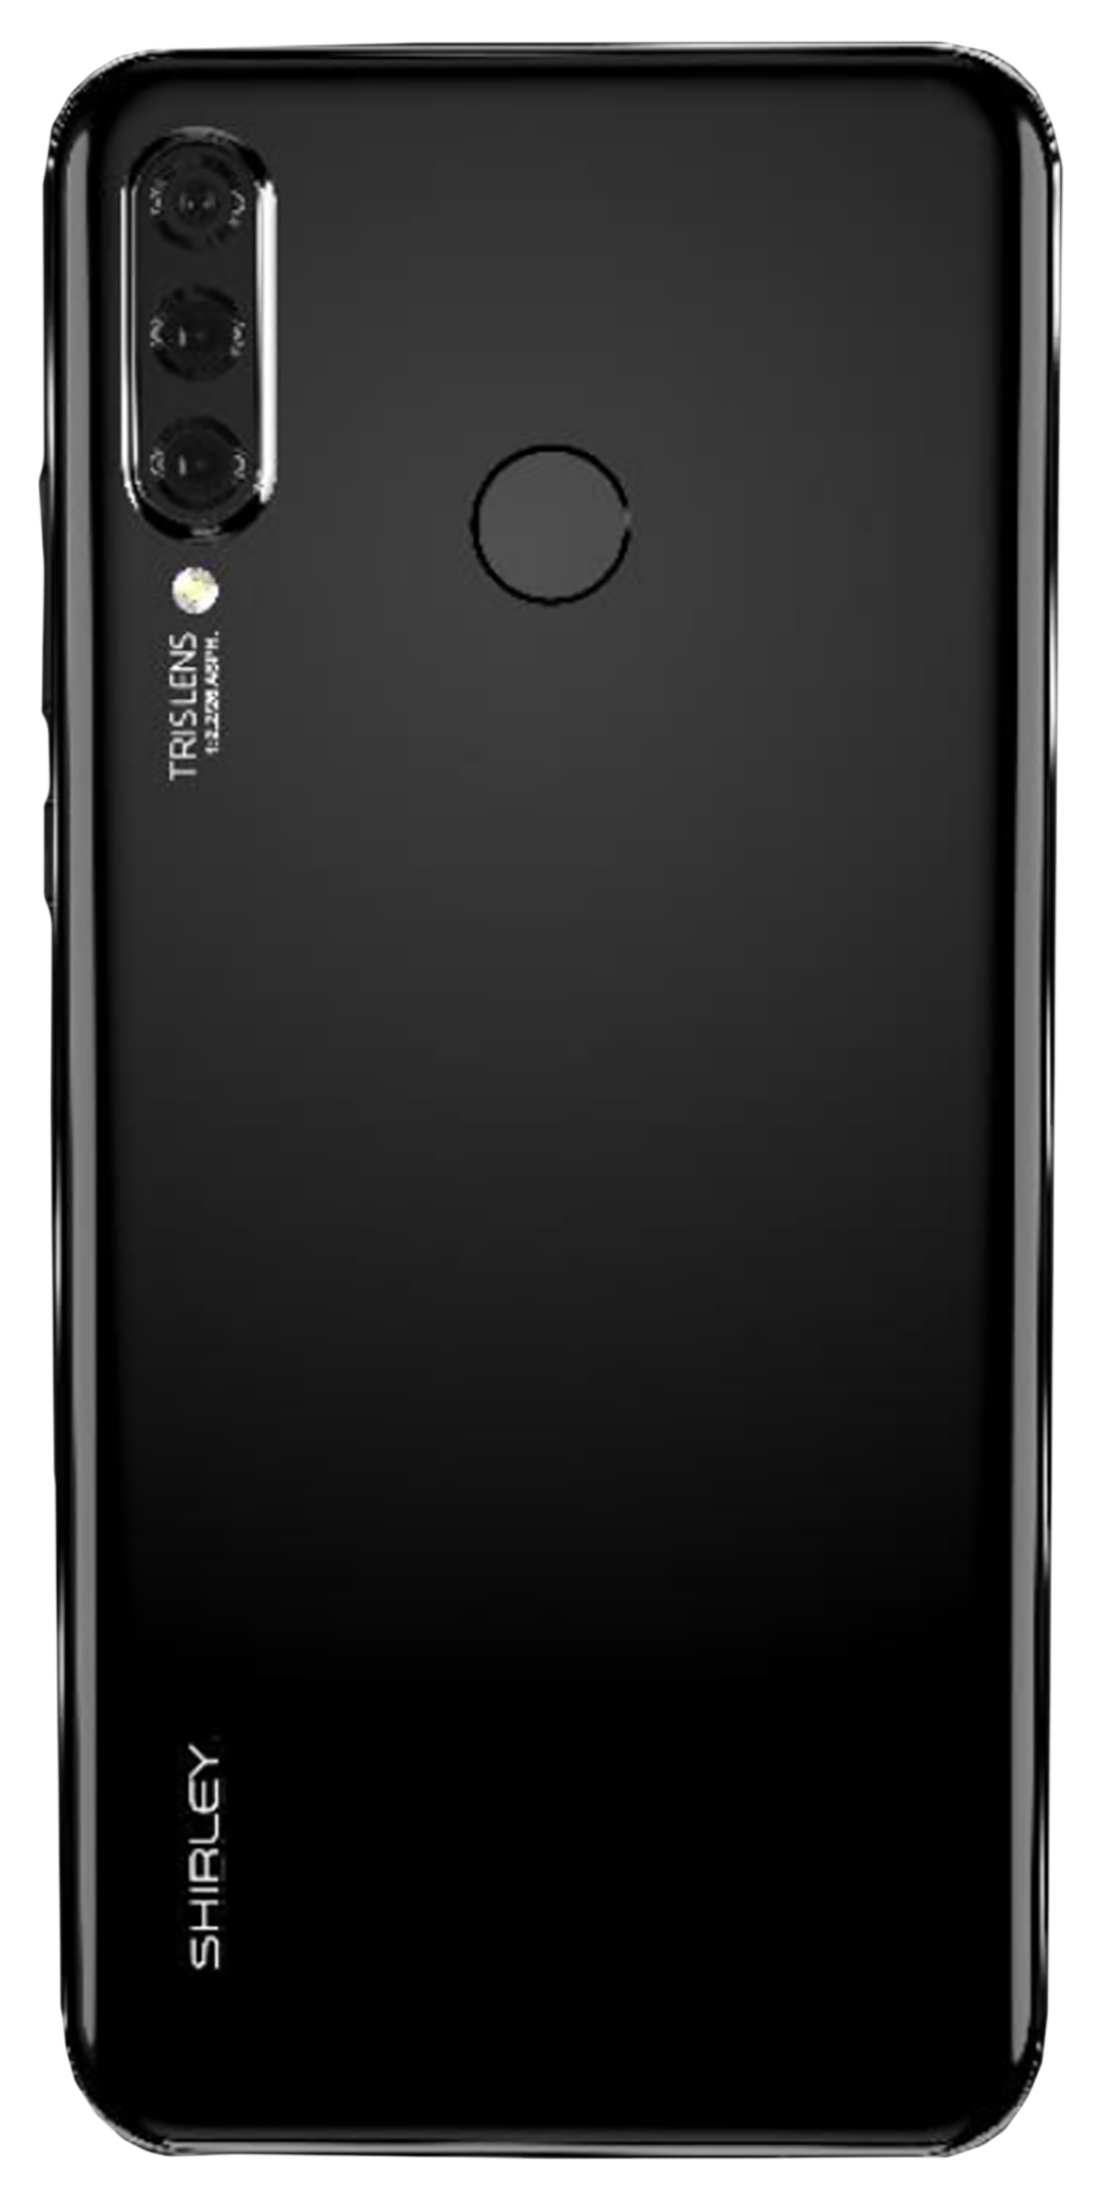 virtual-depot: Huawei P30 Lite DUAL SIM MAR-LX3A 128GB 4GB RAM 6.15